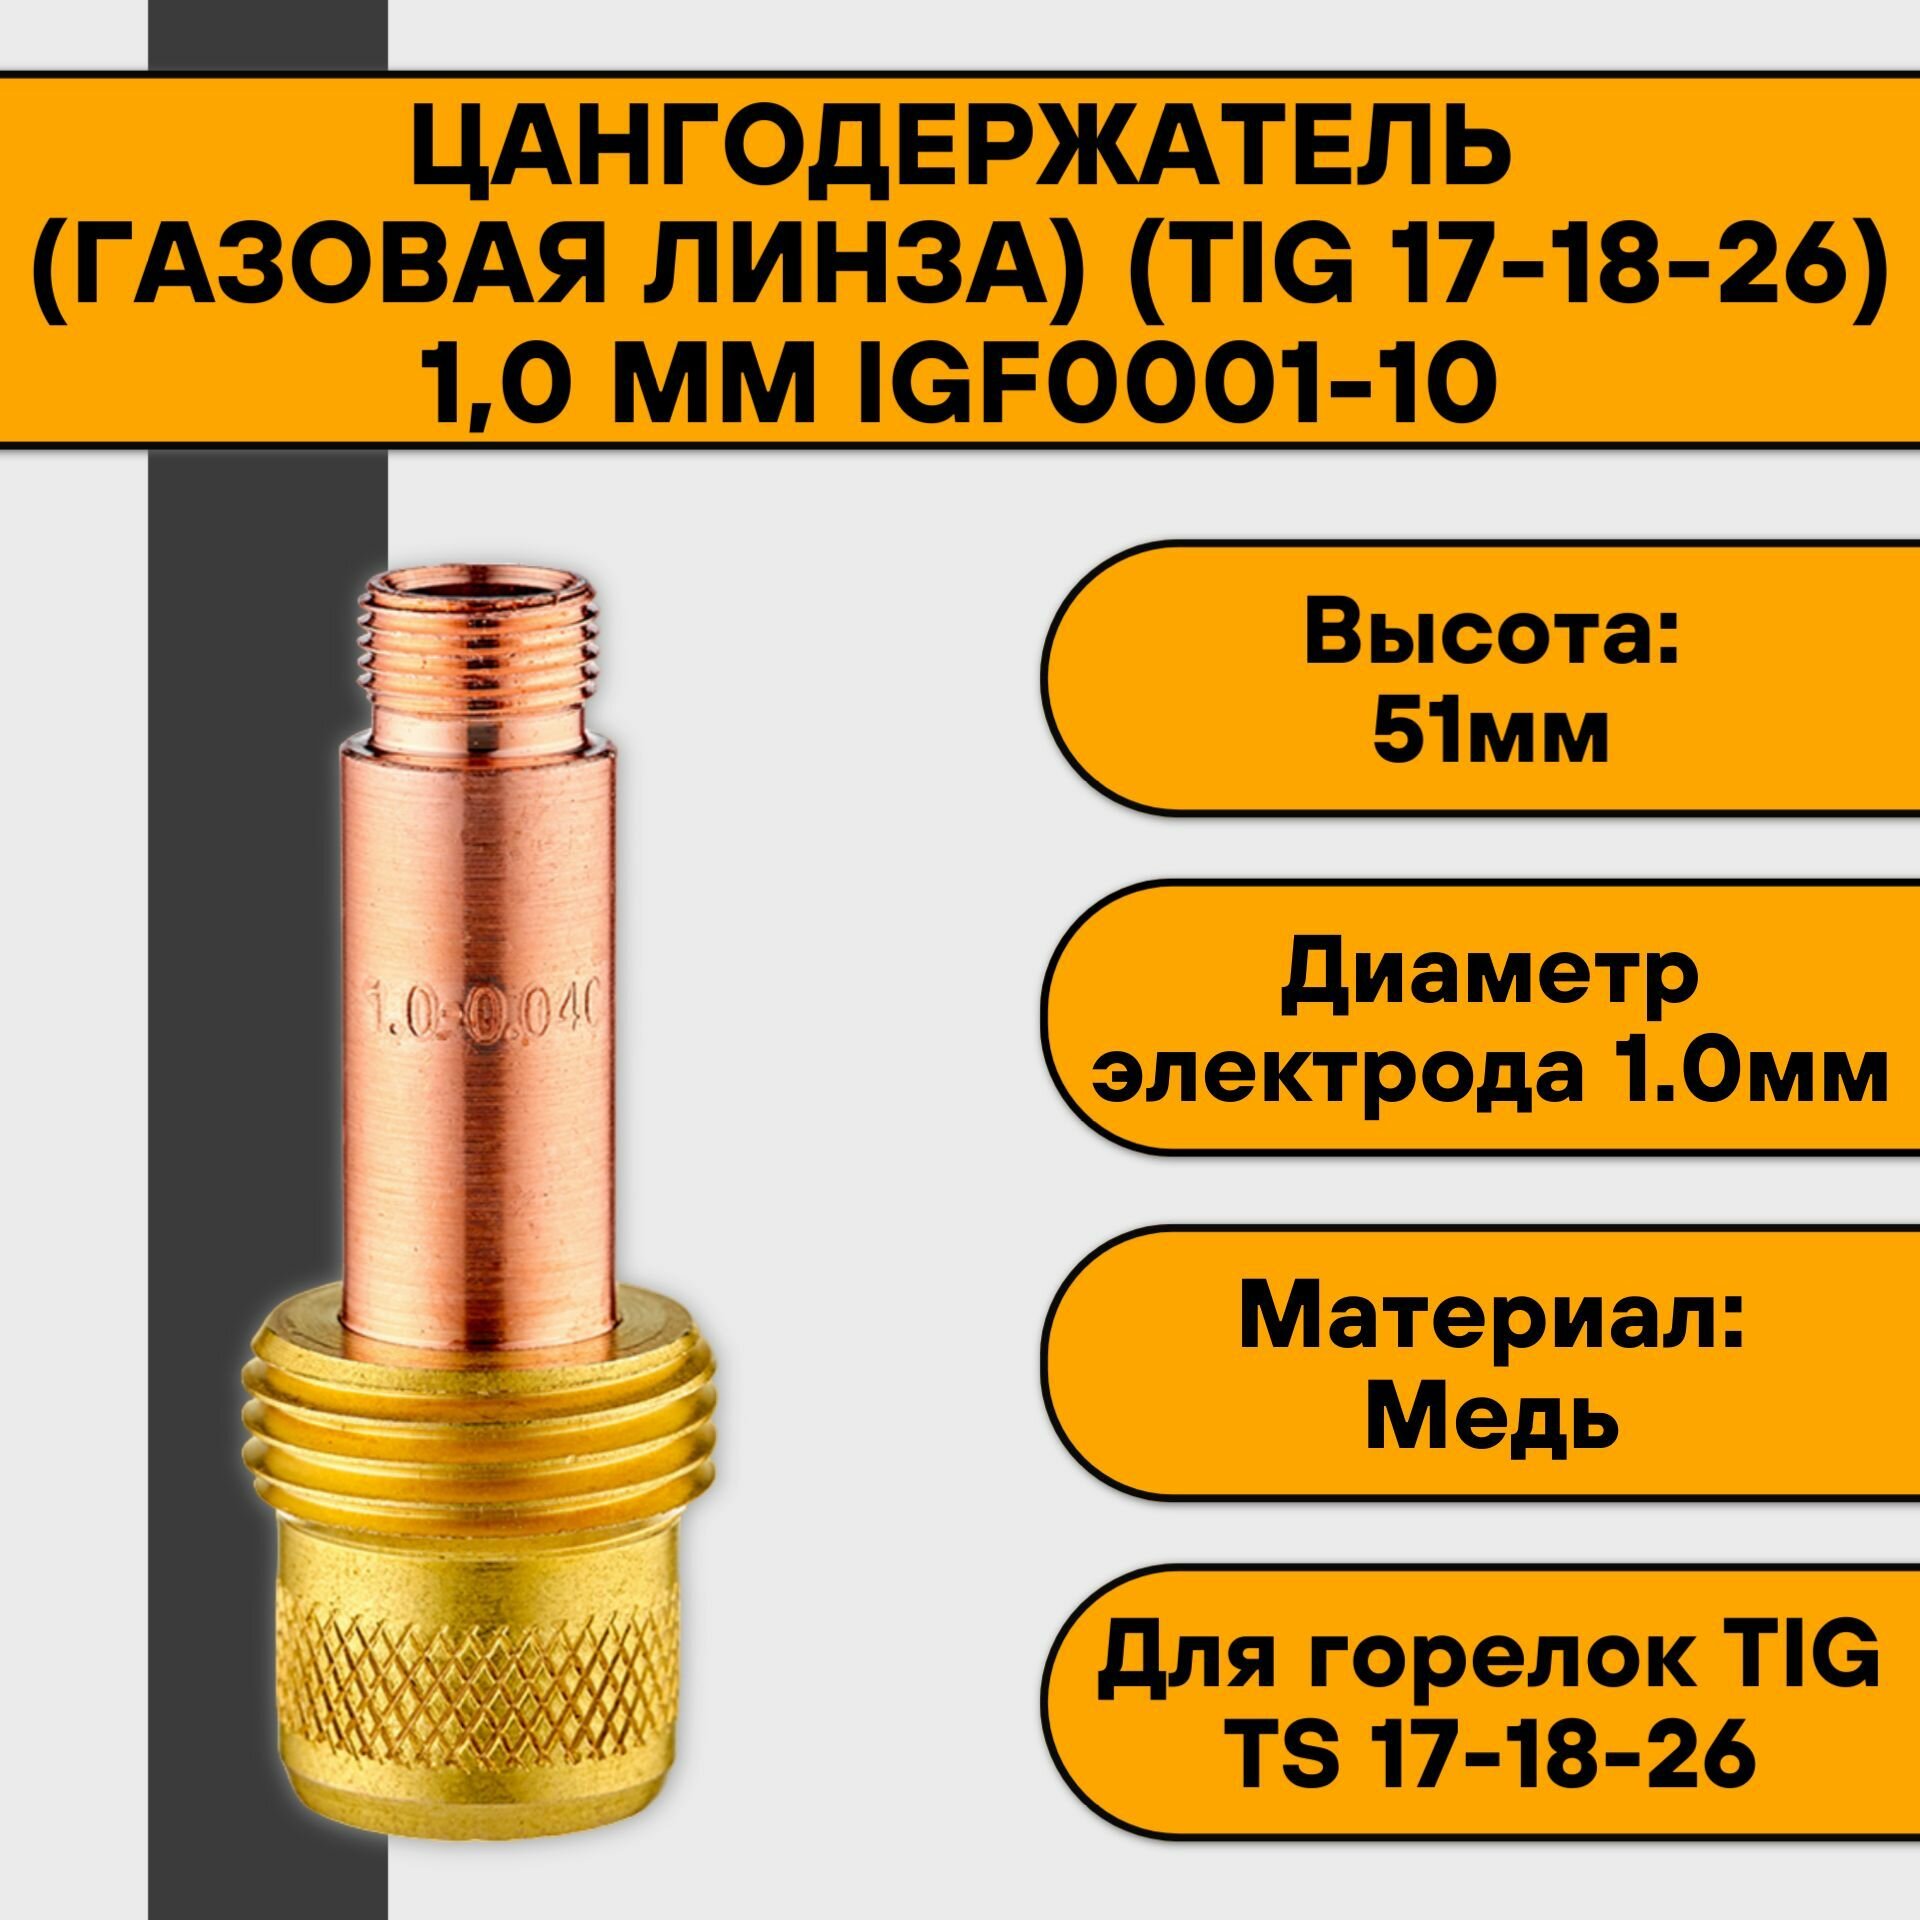 Цангодержатель/держатель цанги (газовая линза) (TIG 17-18-26) 1,0 мм IGF0001-10